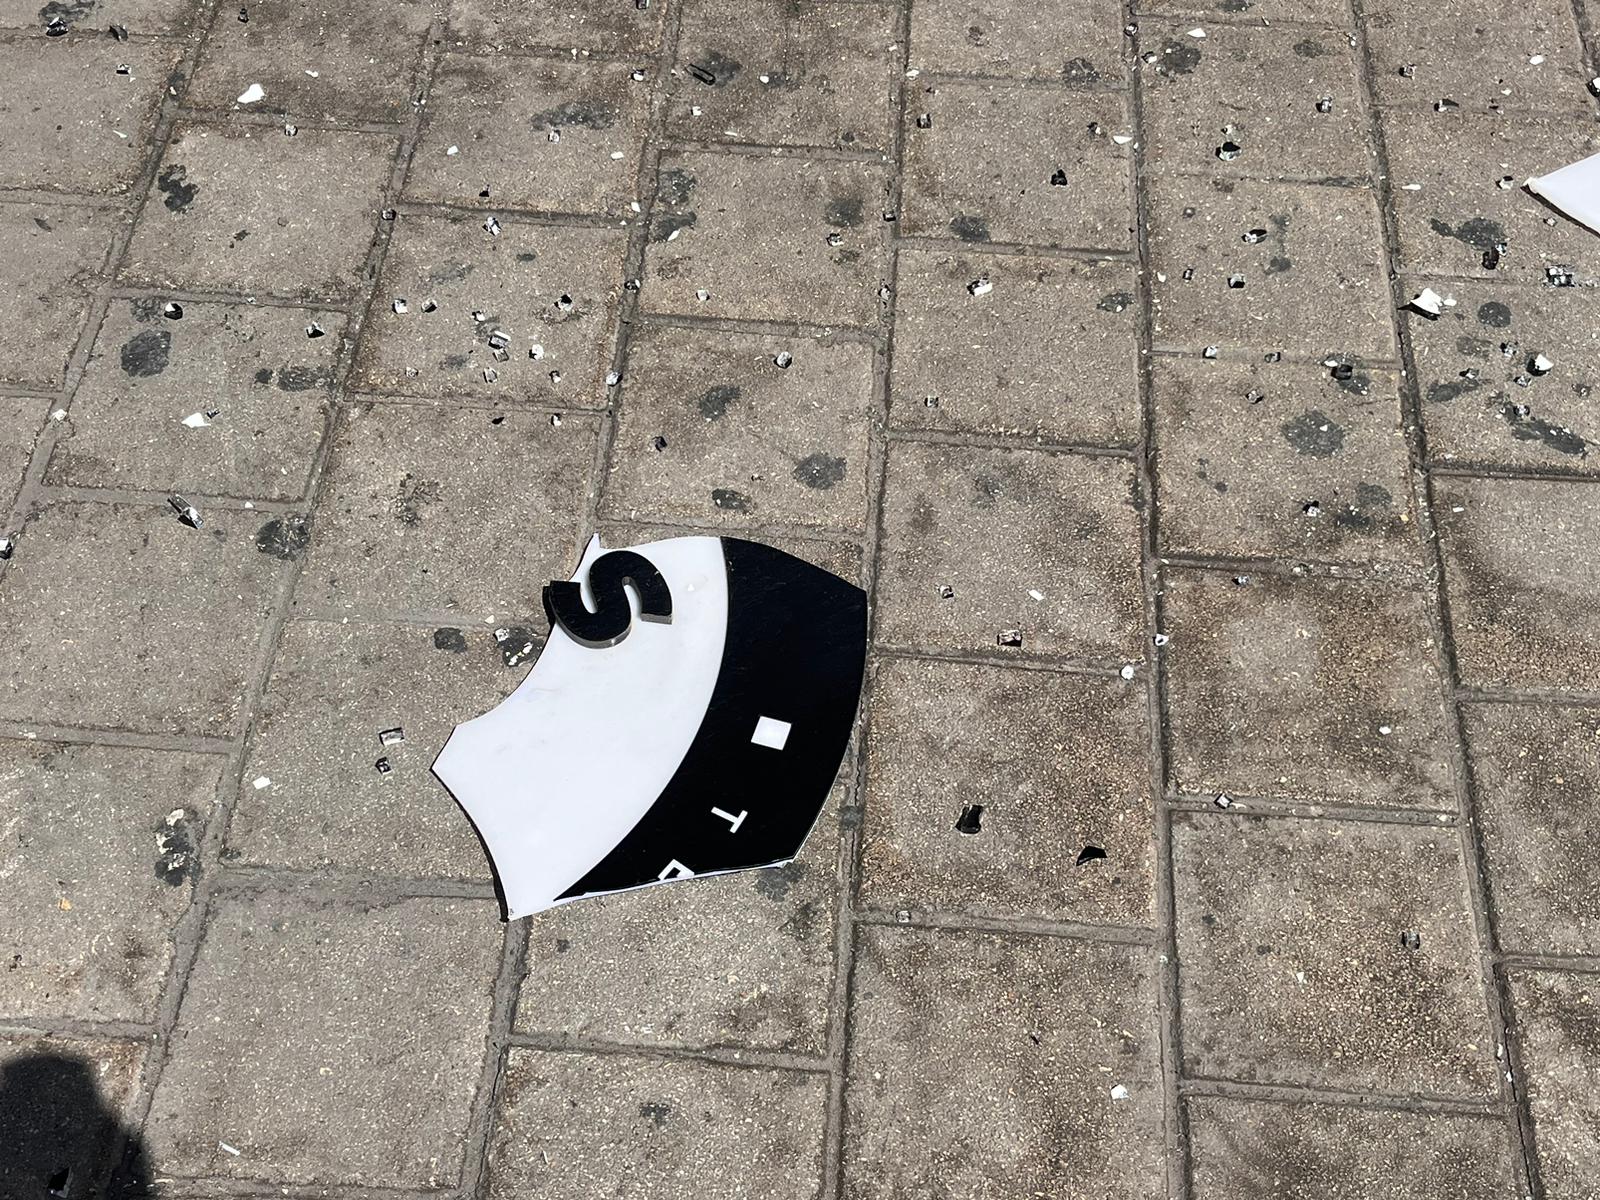 סמל עסק שבור ושברי זכוכיות לאחר המהומות בדרום תל אביב (צילום: אורן דגן)